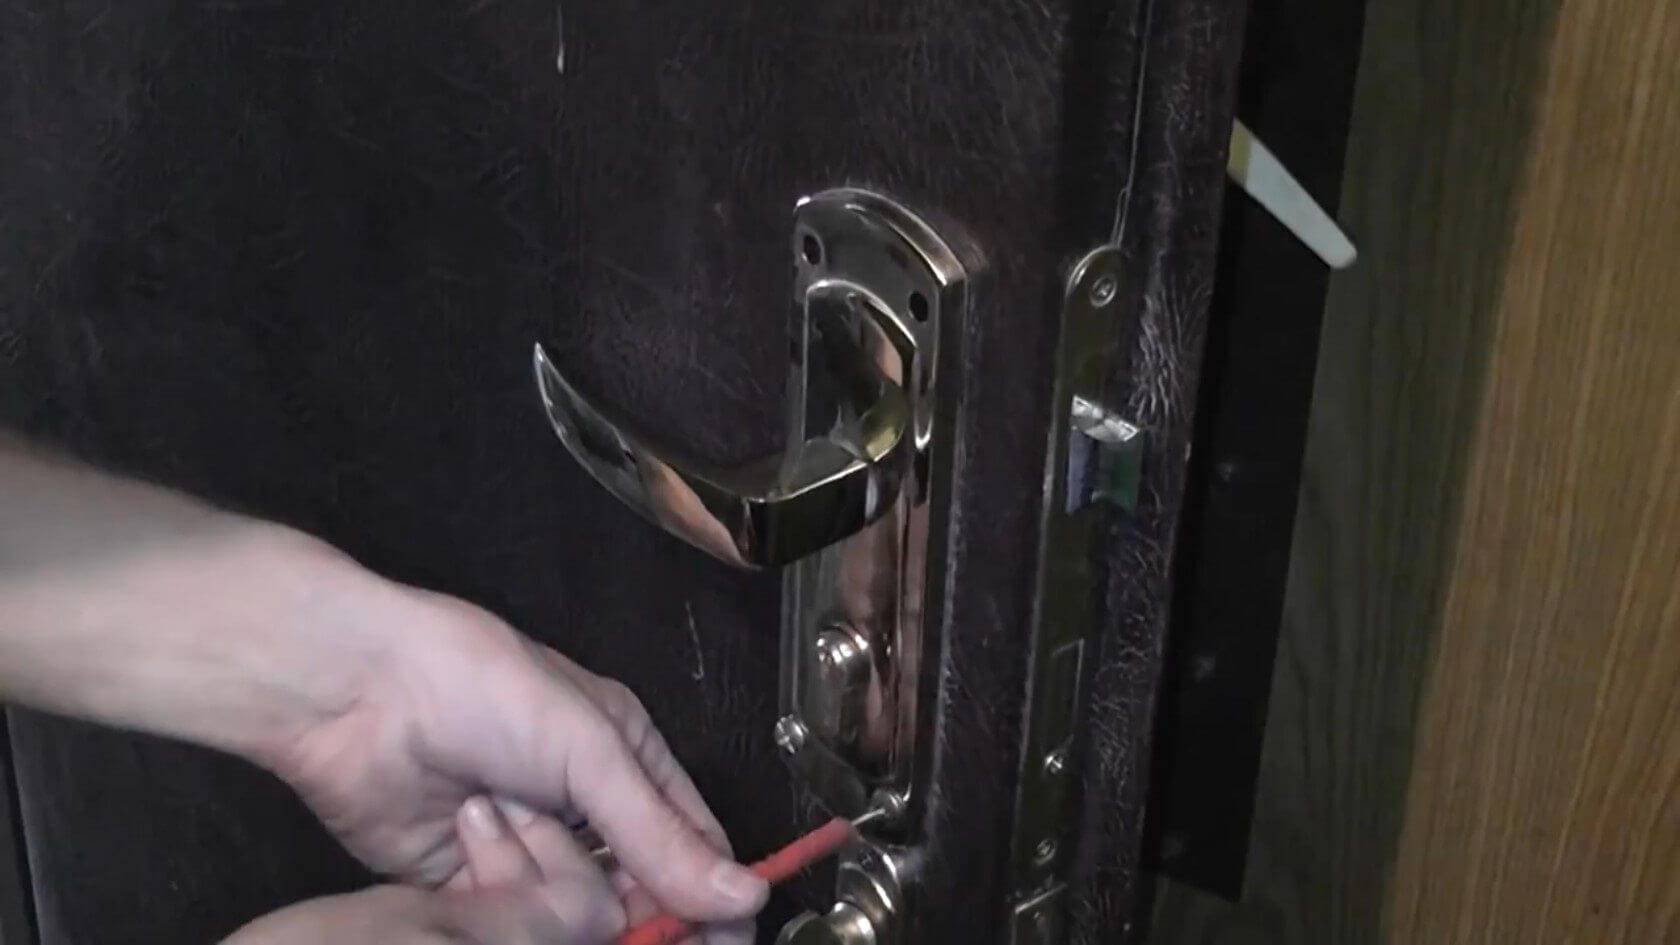 Инструкция, как открыть дверь без ключа